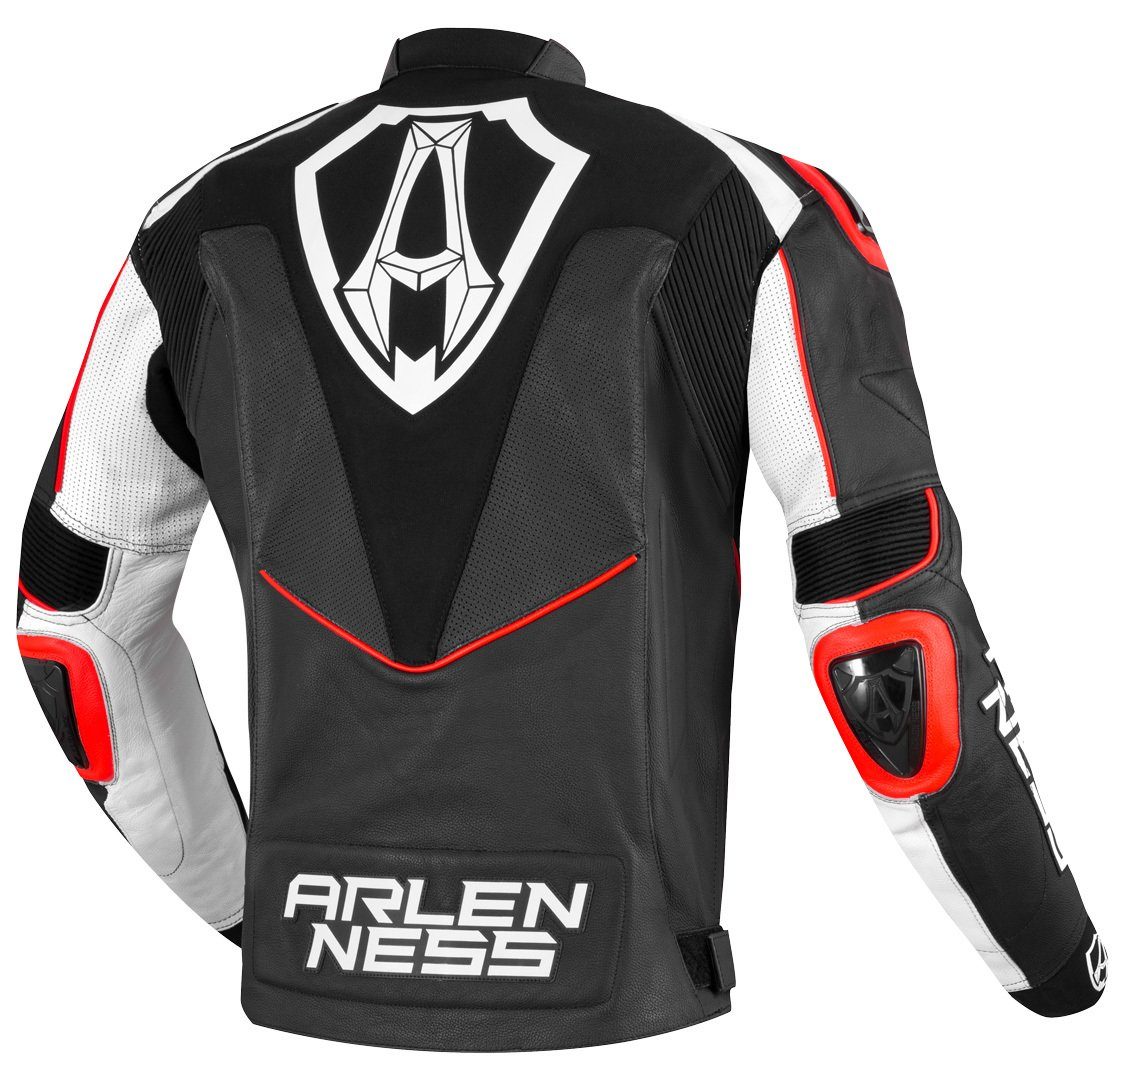 Arlen Ness Motorrad Lederjacke Motorradjacke Black/White/Red Sugello